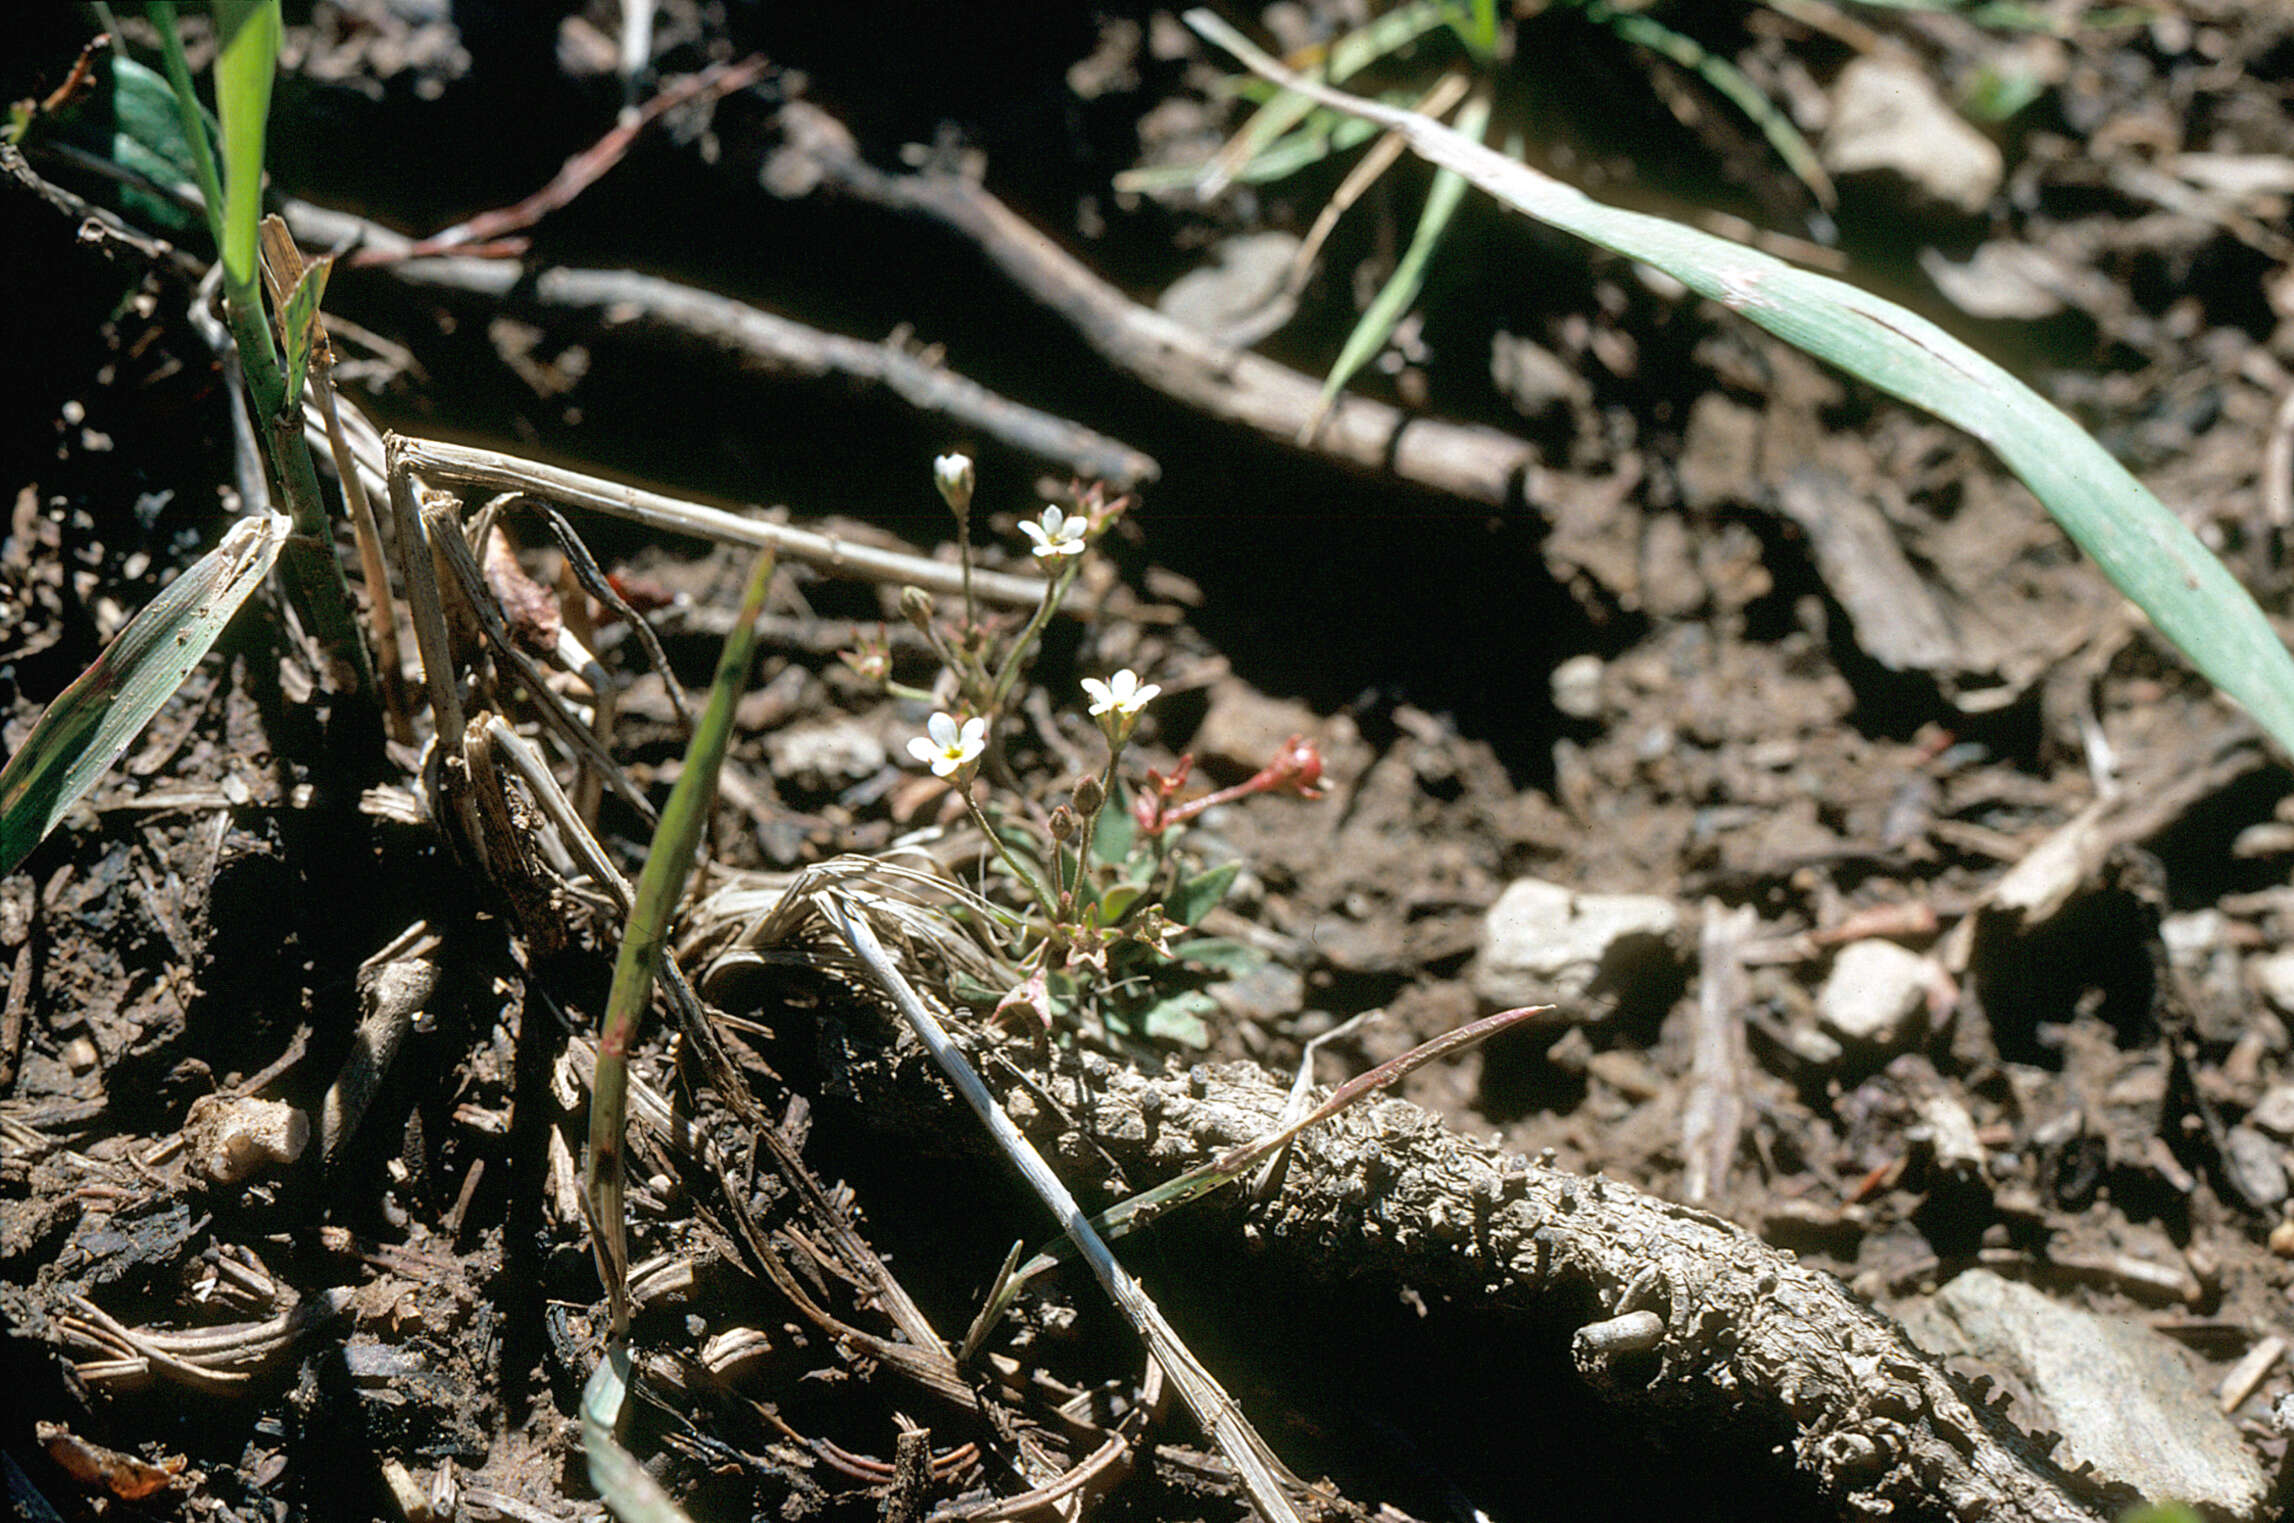 Image of yellowdot saxifrage